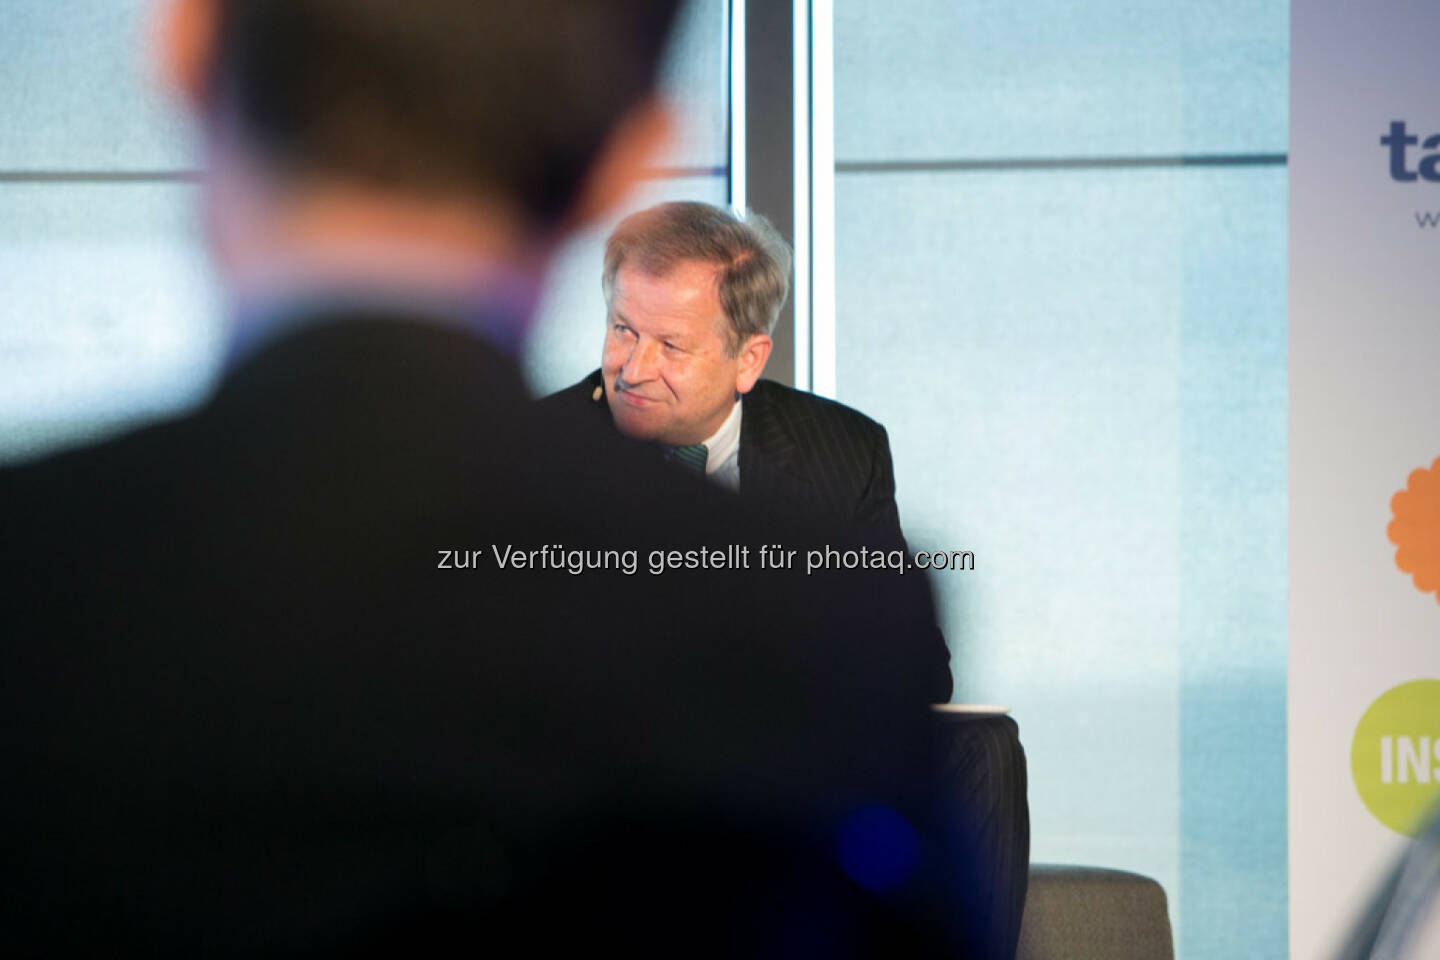 Eduard Zehetner (CEO Immofinanz Group), http://blog.immofinanz.com/de/2015/04/21/talk-im-tower-die-vierte-russland-die-sanktionen-und-die-folgen/
